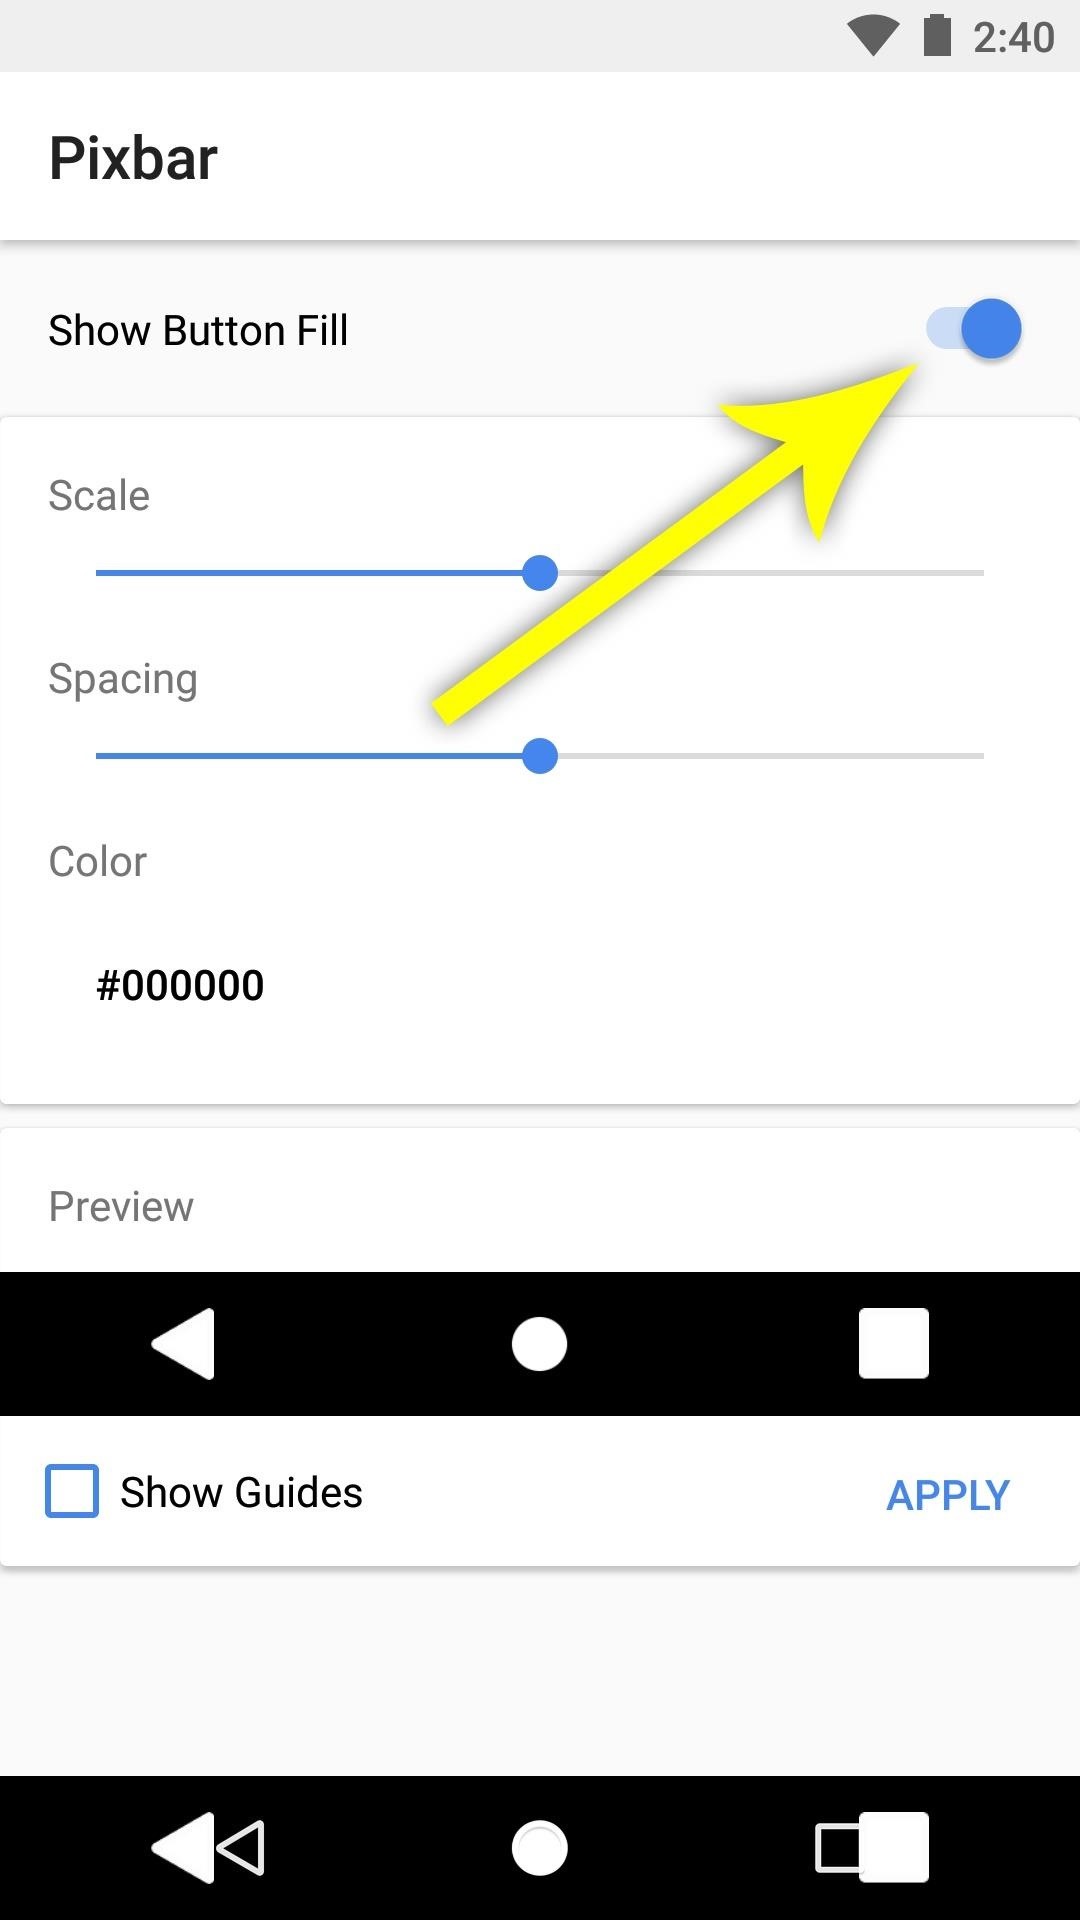 احصل على أزرار شريط التنقل الصلبة في Pixel (أو لونك المفضل) على الهواتف الأخرى - دون الحاجة إلى الجذر